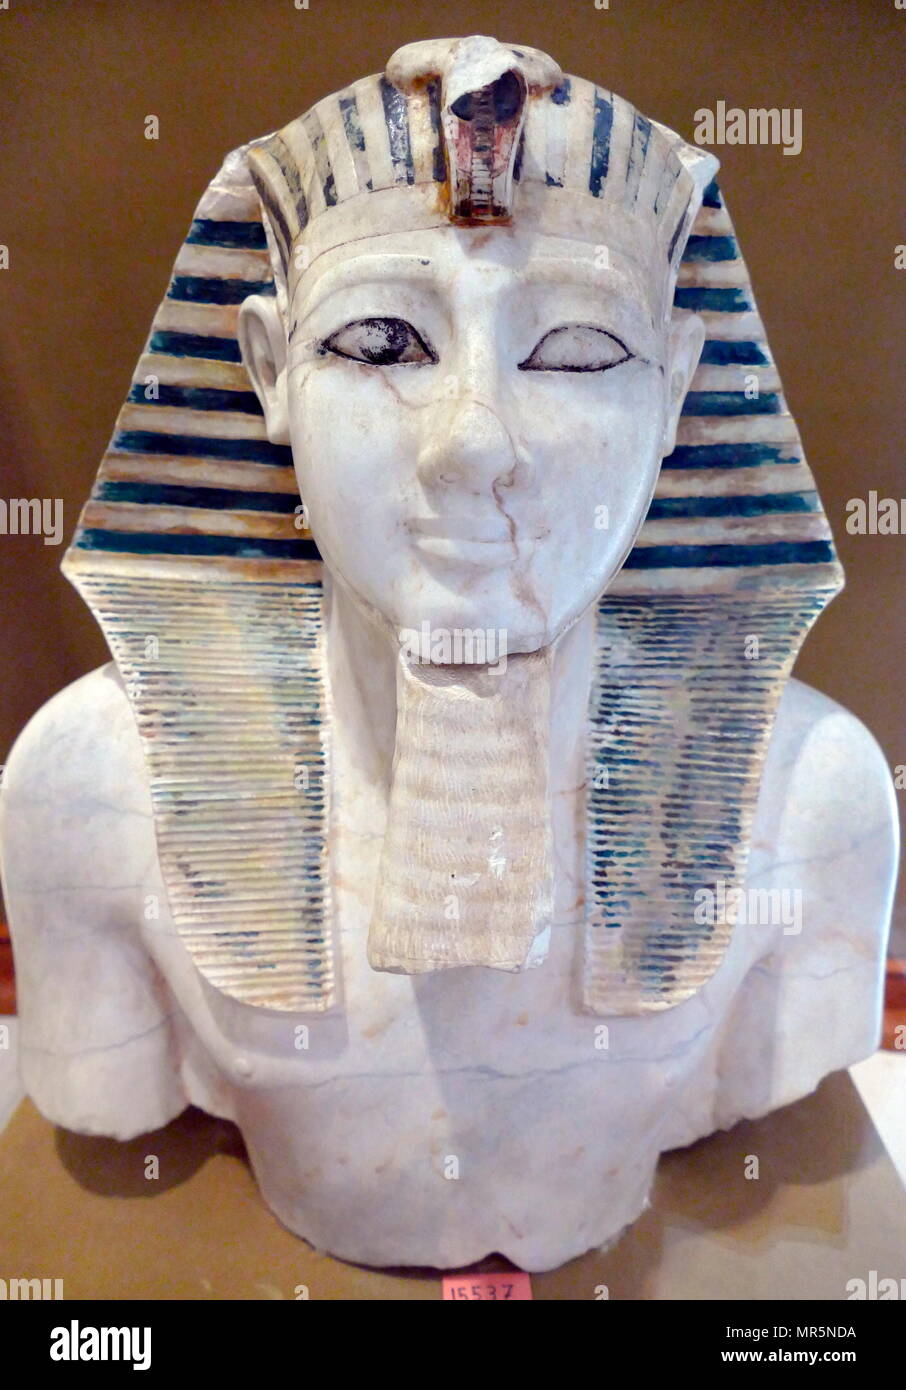 Leiter des Tutmosis III; Alabaster; 18. Dynastie; Neues Reich. Gefunden am Totentempel von Mentuhotep II. in Deir el Bahri, Ägypten. Stockfoto